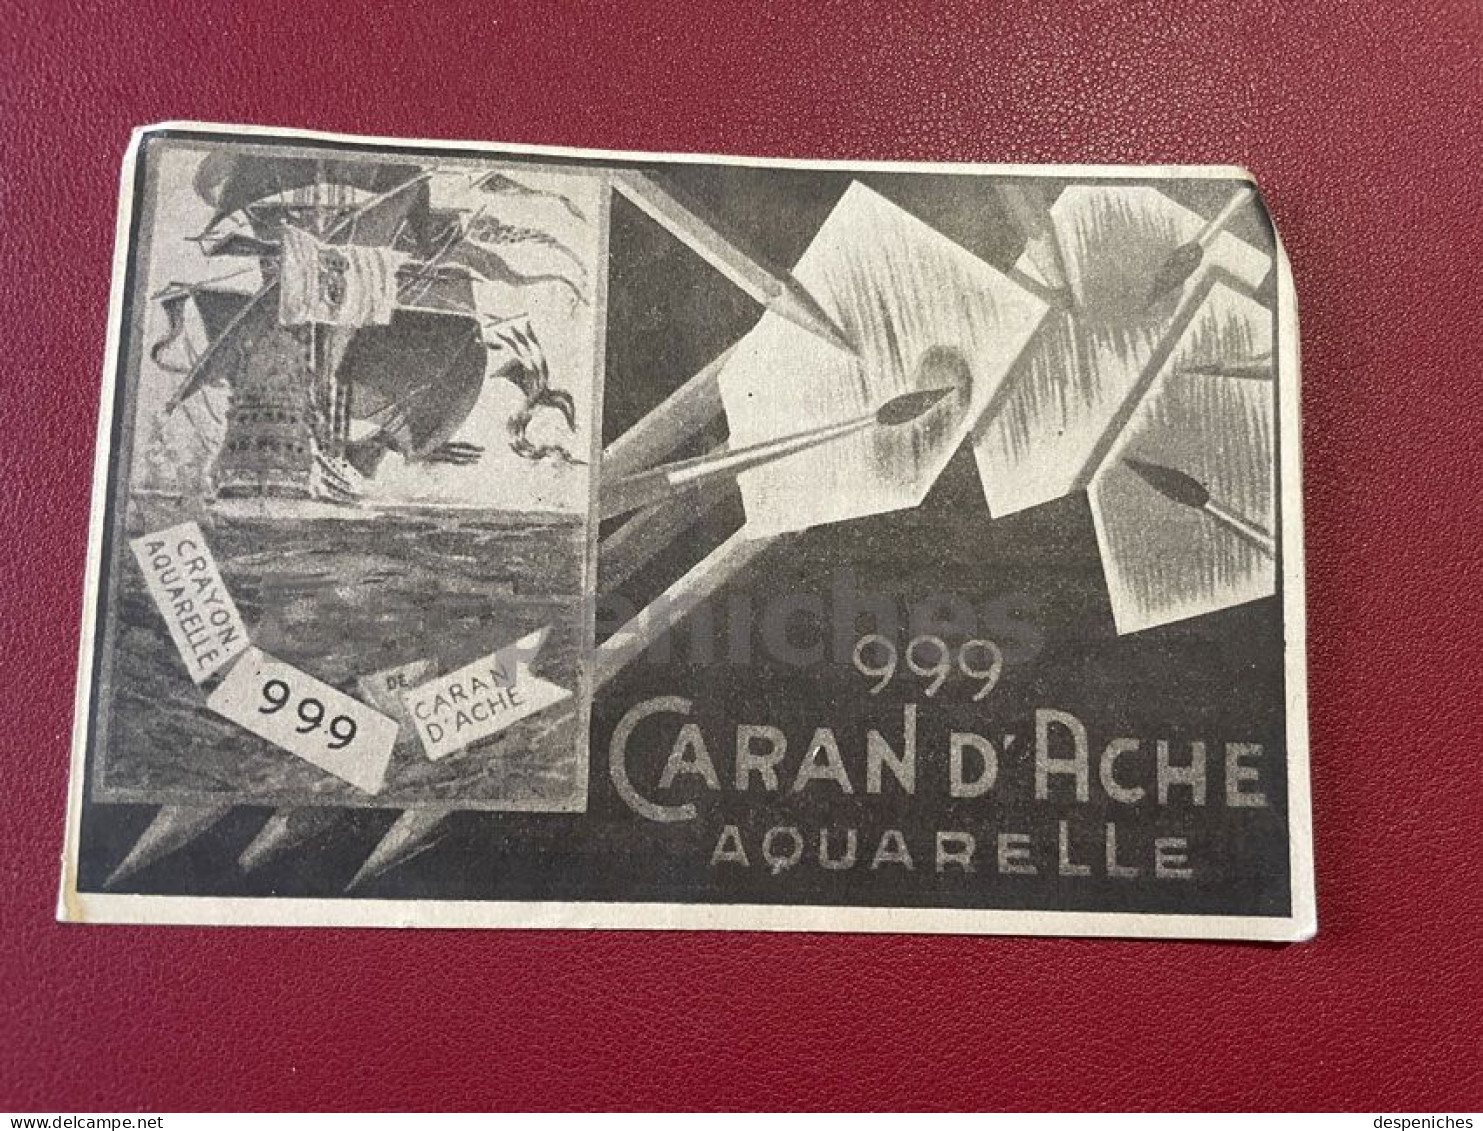 Publicité Caran D'Ache 999 - Advertising